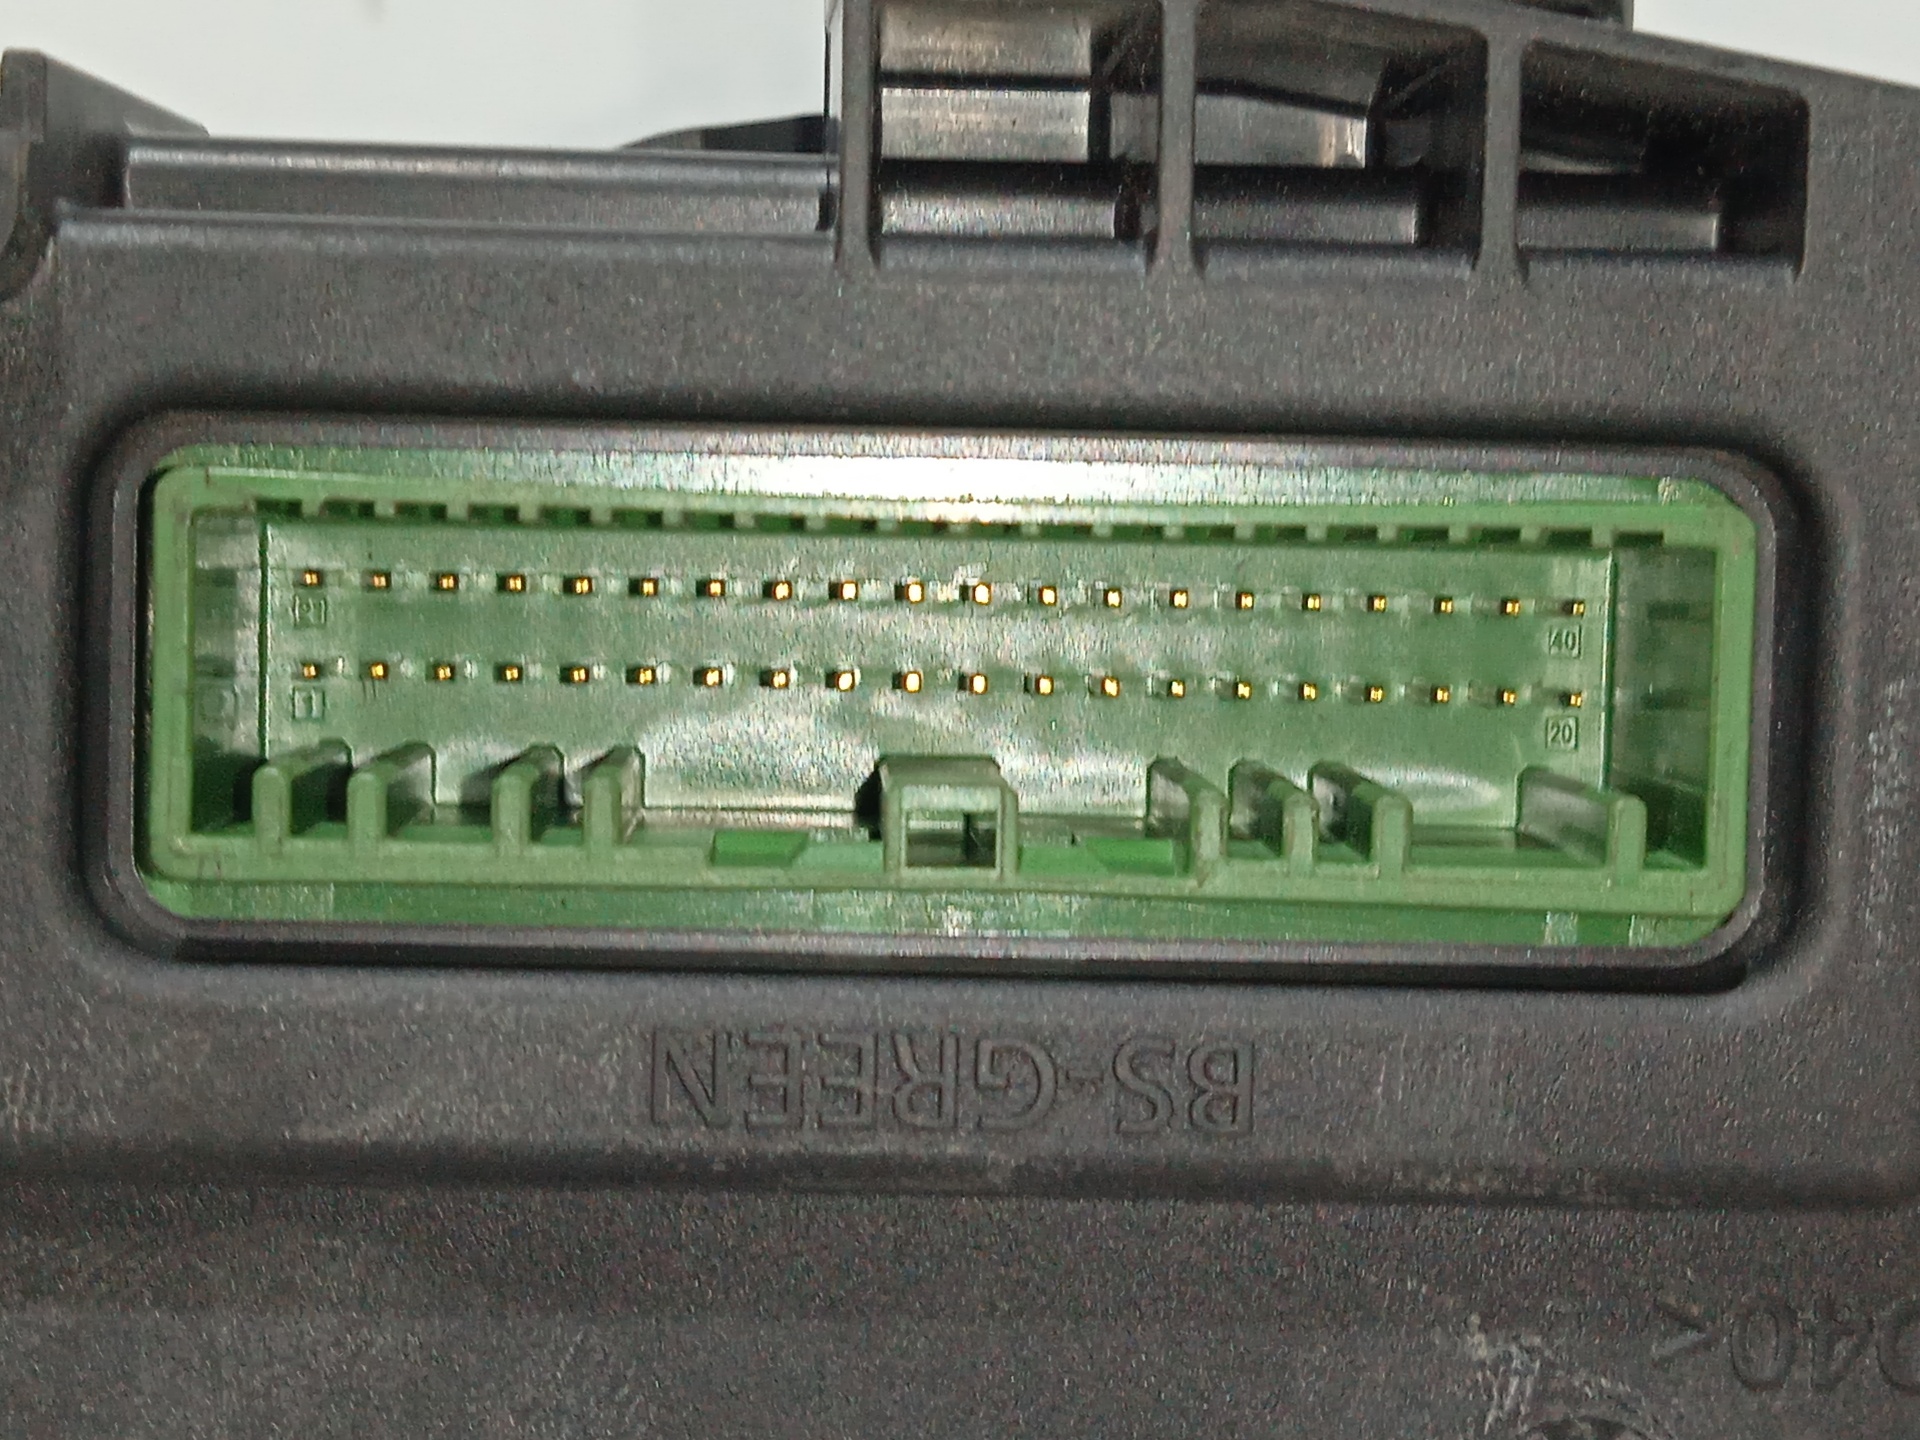 NISSAN Qashqai 2 generation (2013-2023) Comfort Control Unit 284B14CB5C 18389744